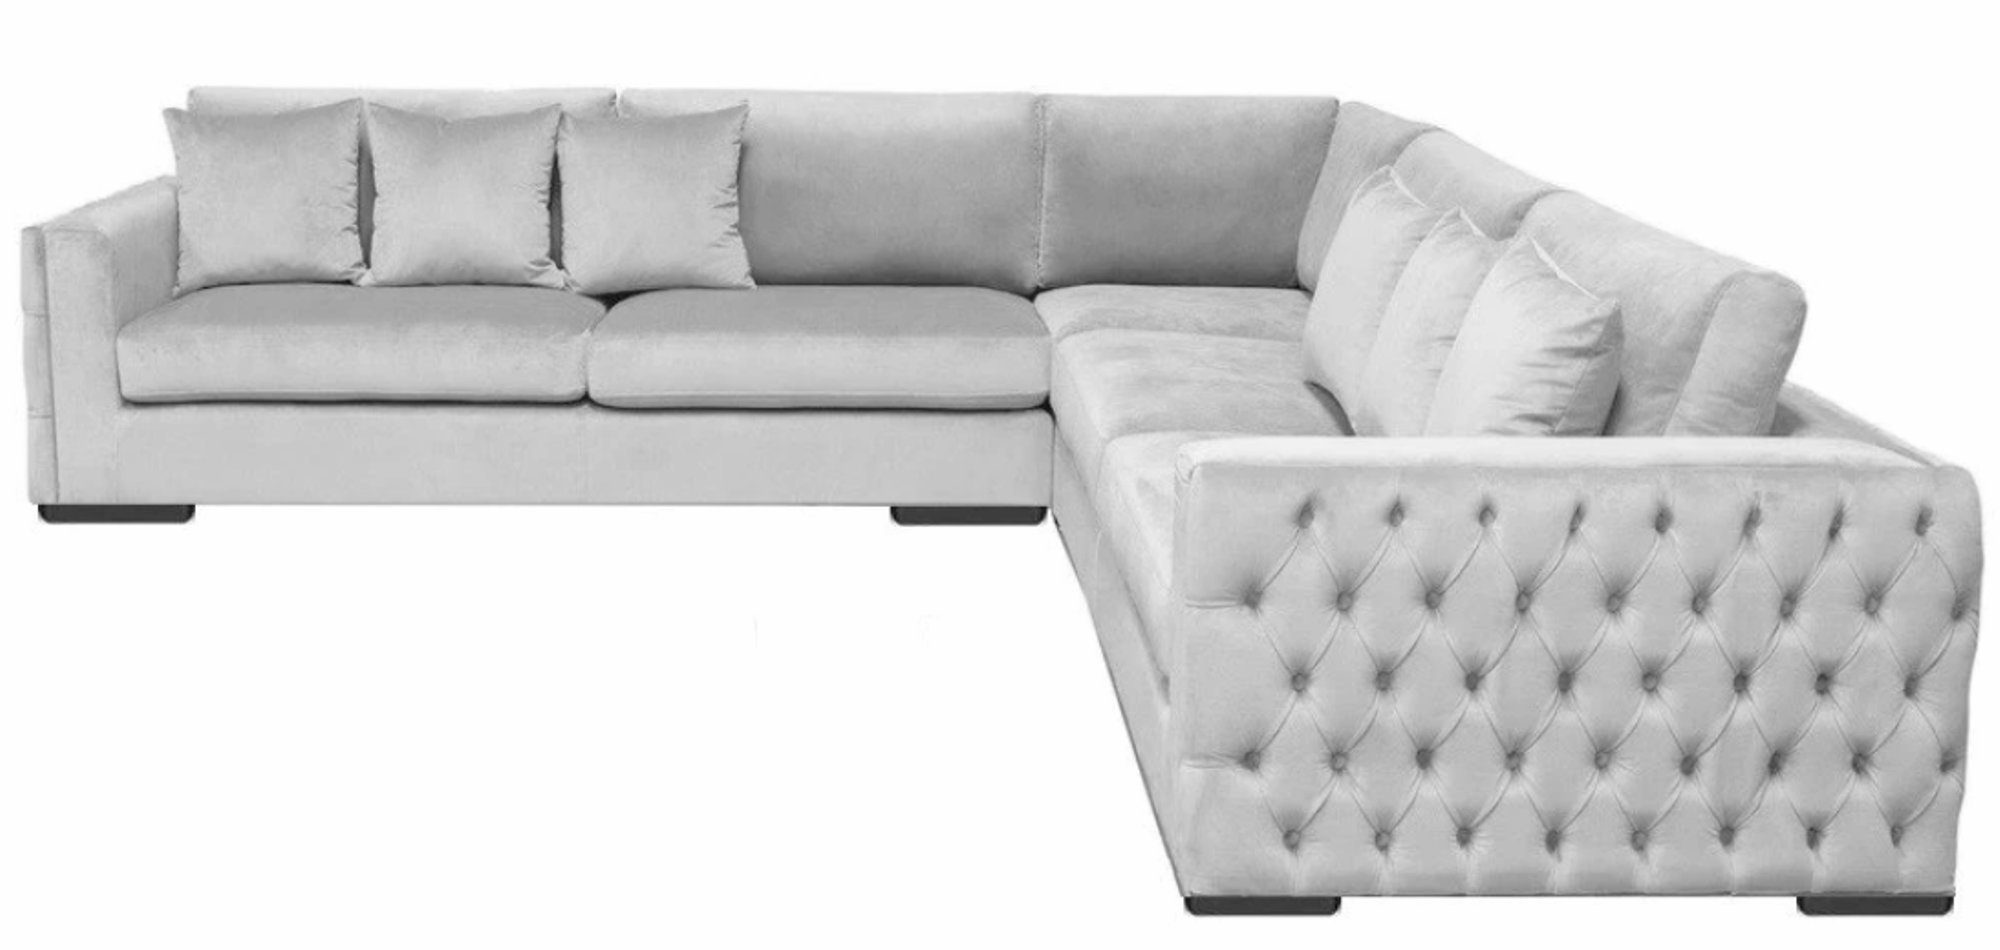 Couch Europe Made Ecksofa Neu, in moderne Luxus Ecksofa Polstermöbel L-Form Silber JVmoebel